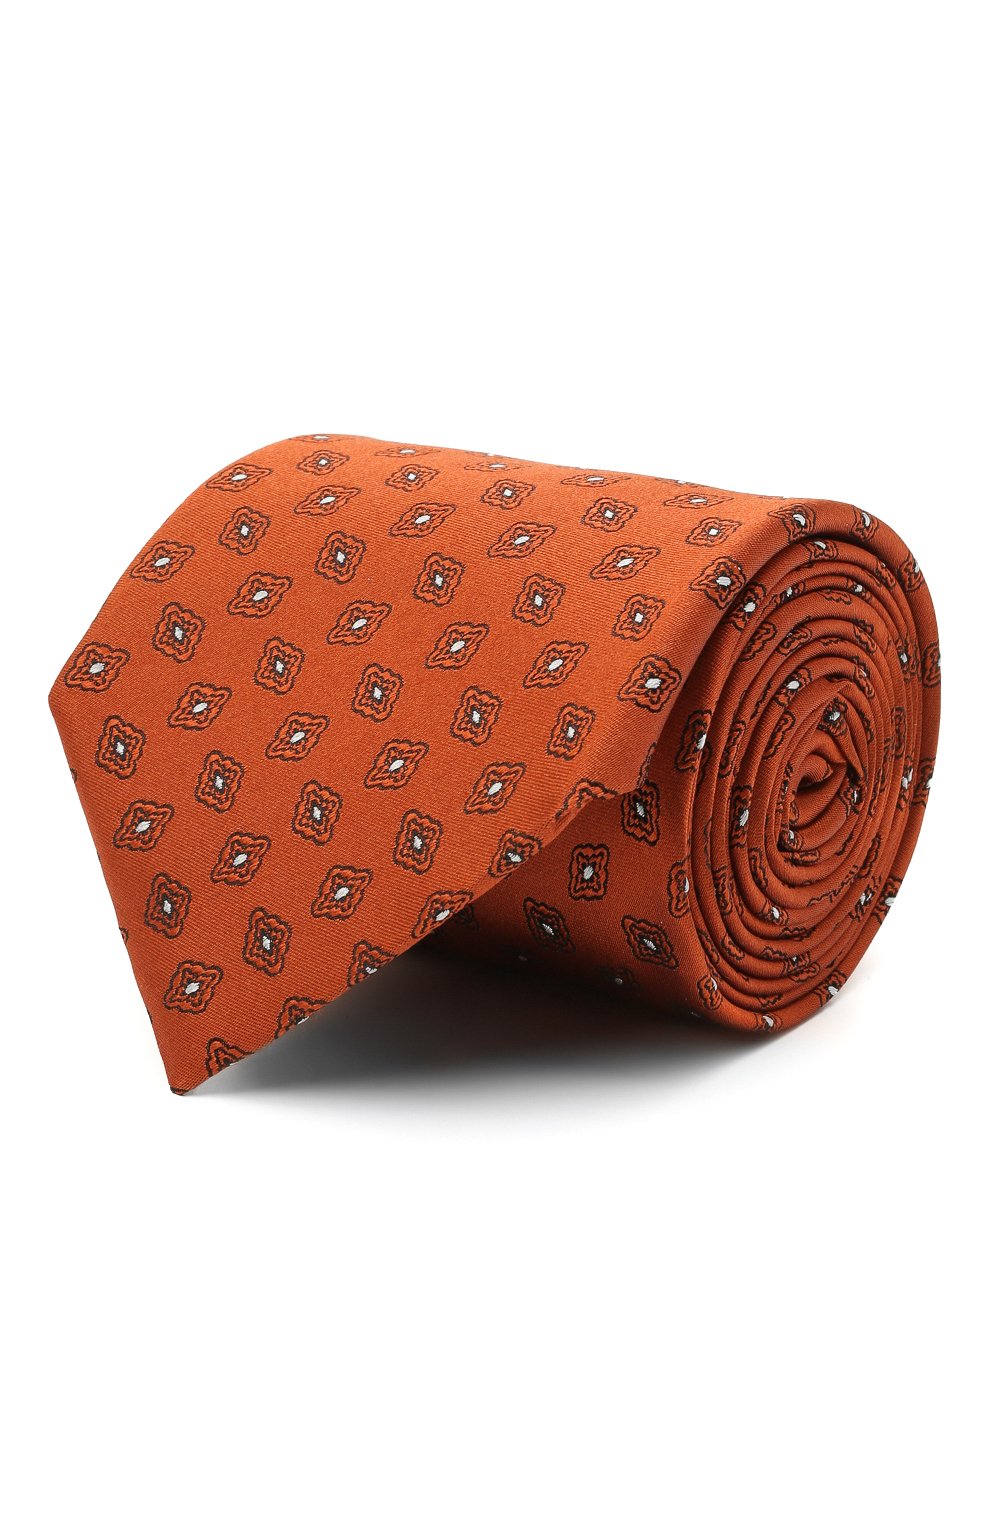 С принтом Ermenegildo Zegna, Шелковый галстук Ermenegildo Zegna, Италия, Оранжевый, Шелк: 100%;, 11683389  - купить